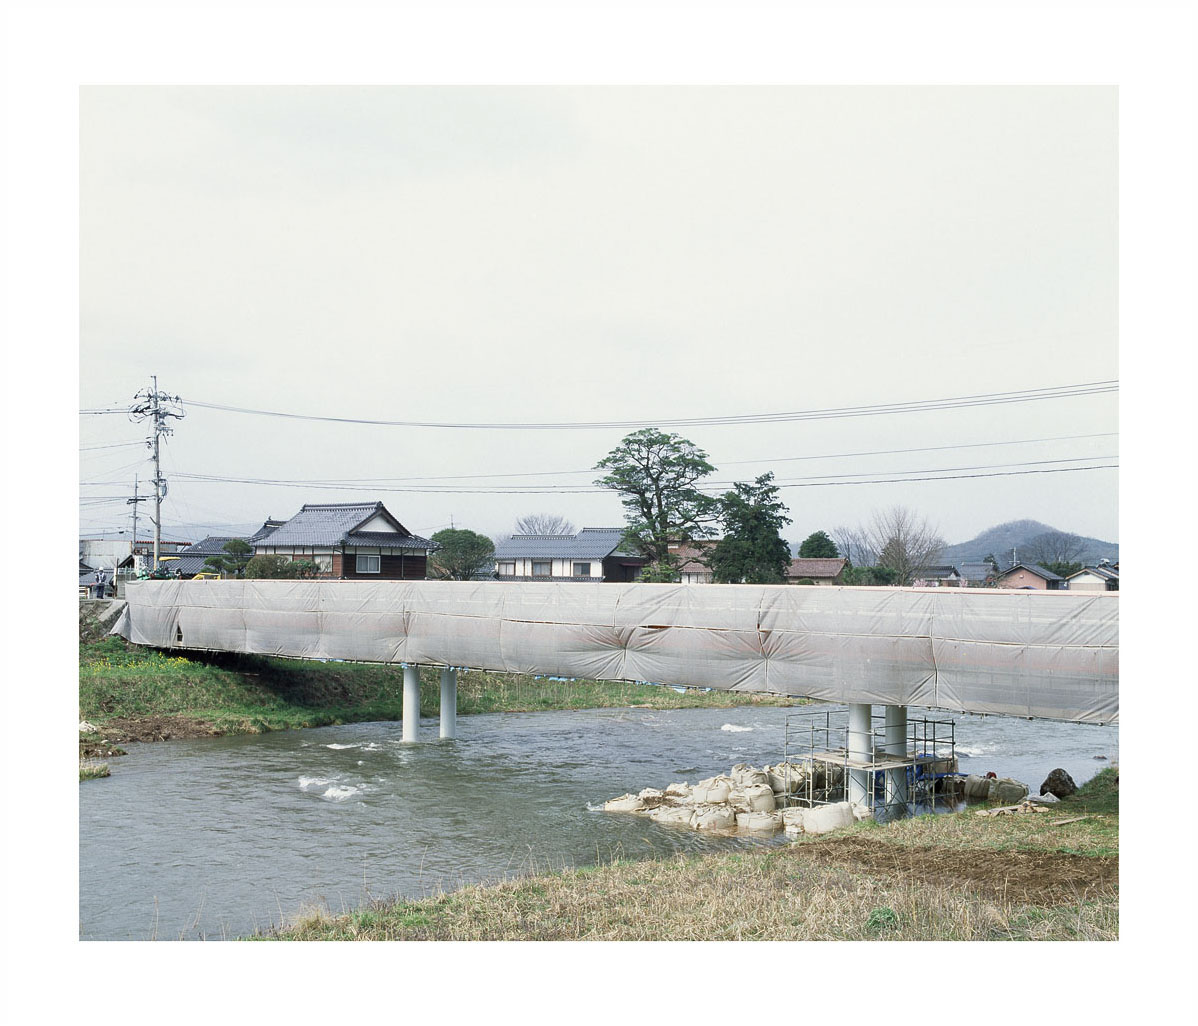 japan tottori sendai kudász arion Gabor river Landscape portrait road dead-end mountain bridge staged countryside car funny